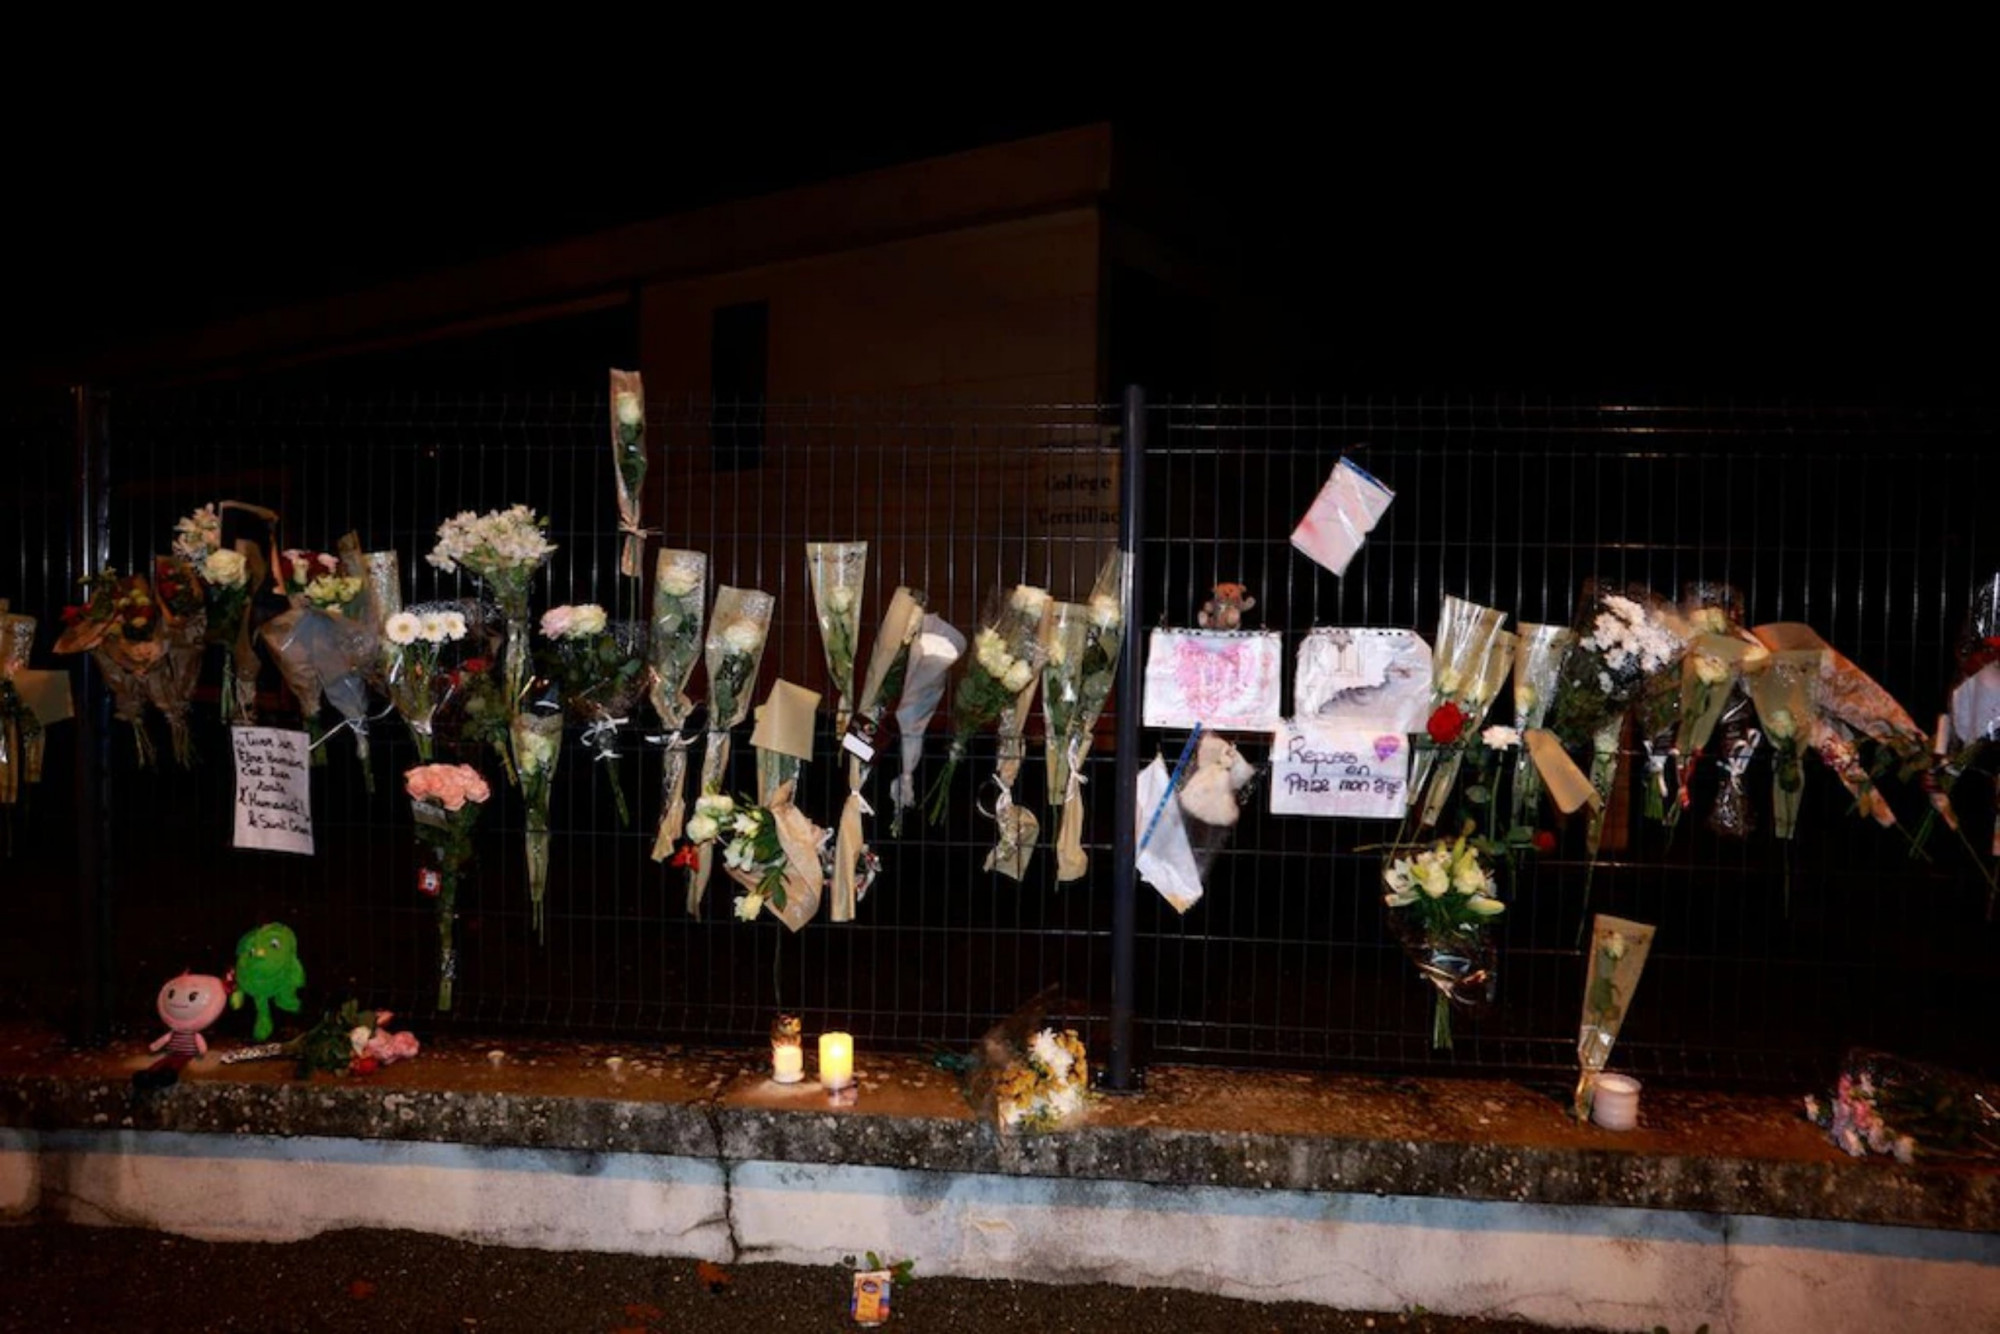 Nhiều người dân đặt hoa bên ngoài trường học của cô bé 14 tuổi vừa bị sát hại để tưởng nhớ em.